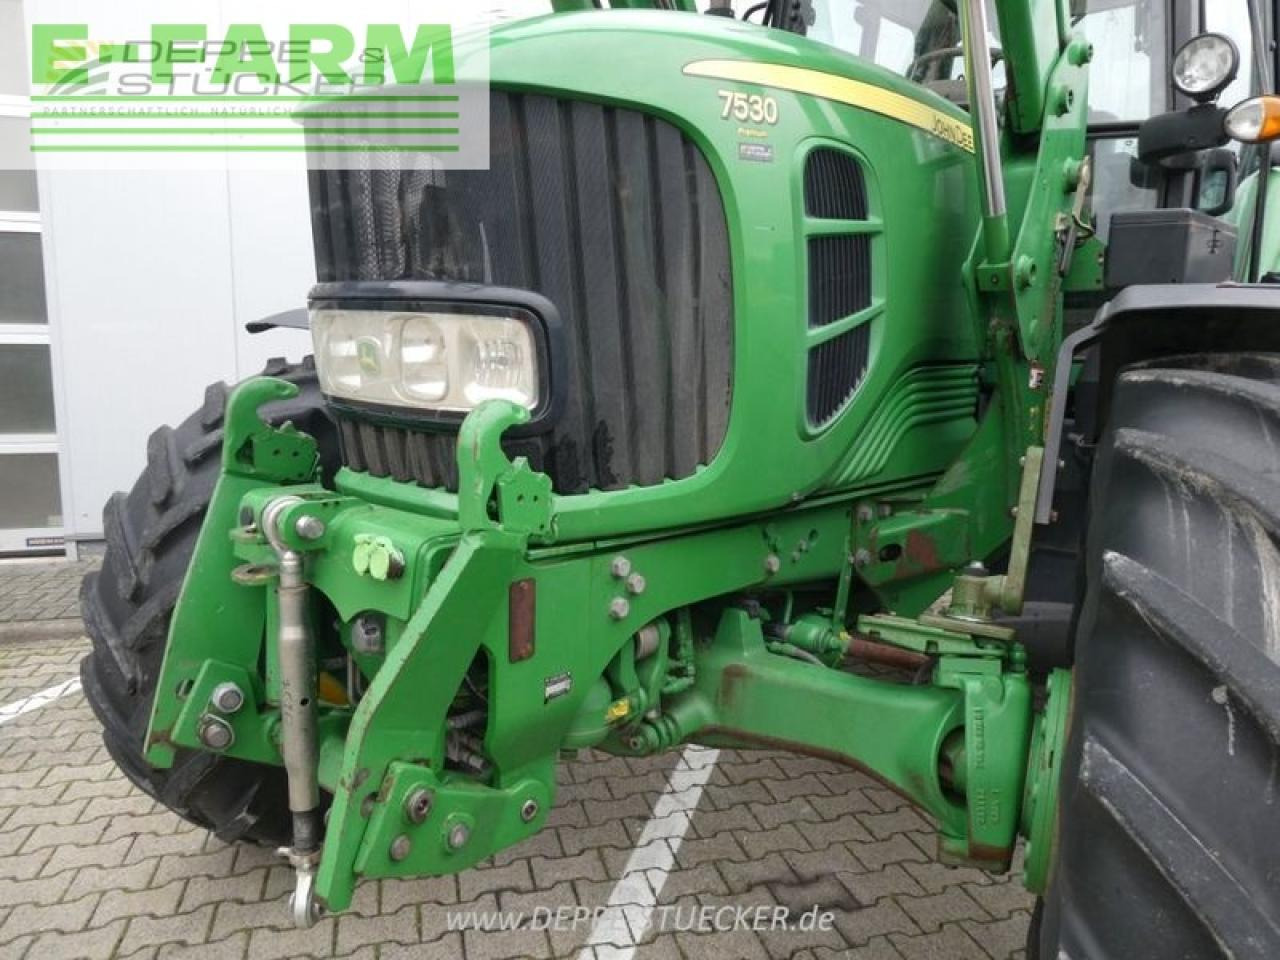 Traktor John Deere 7530 premium inkl. 751 frontlader: obrázok 18